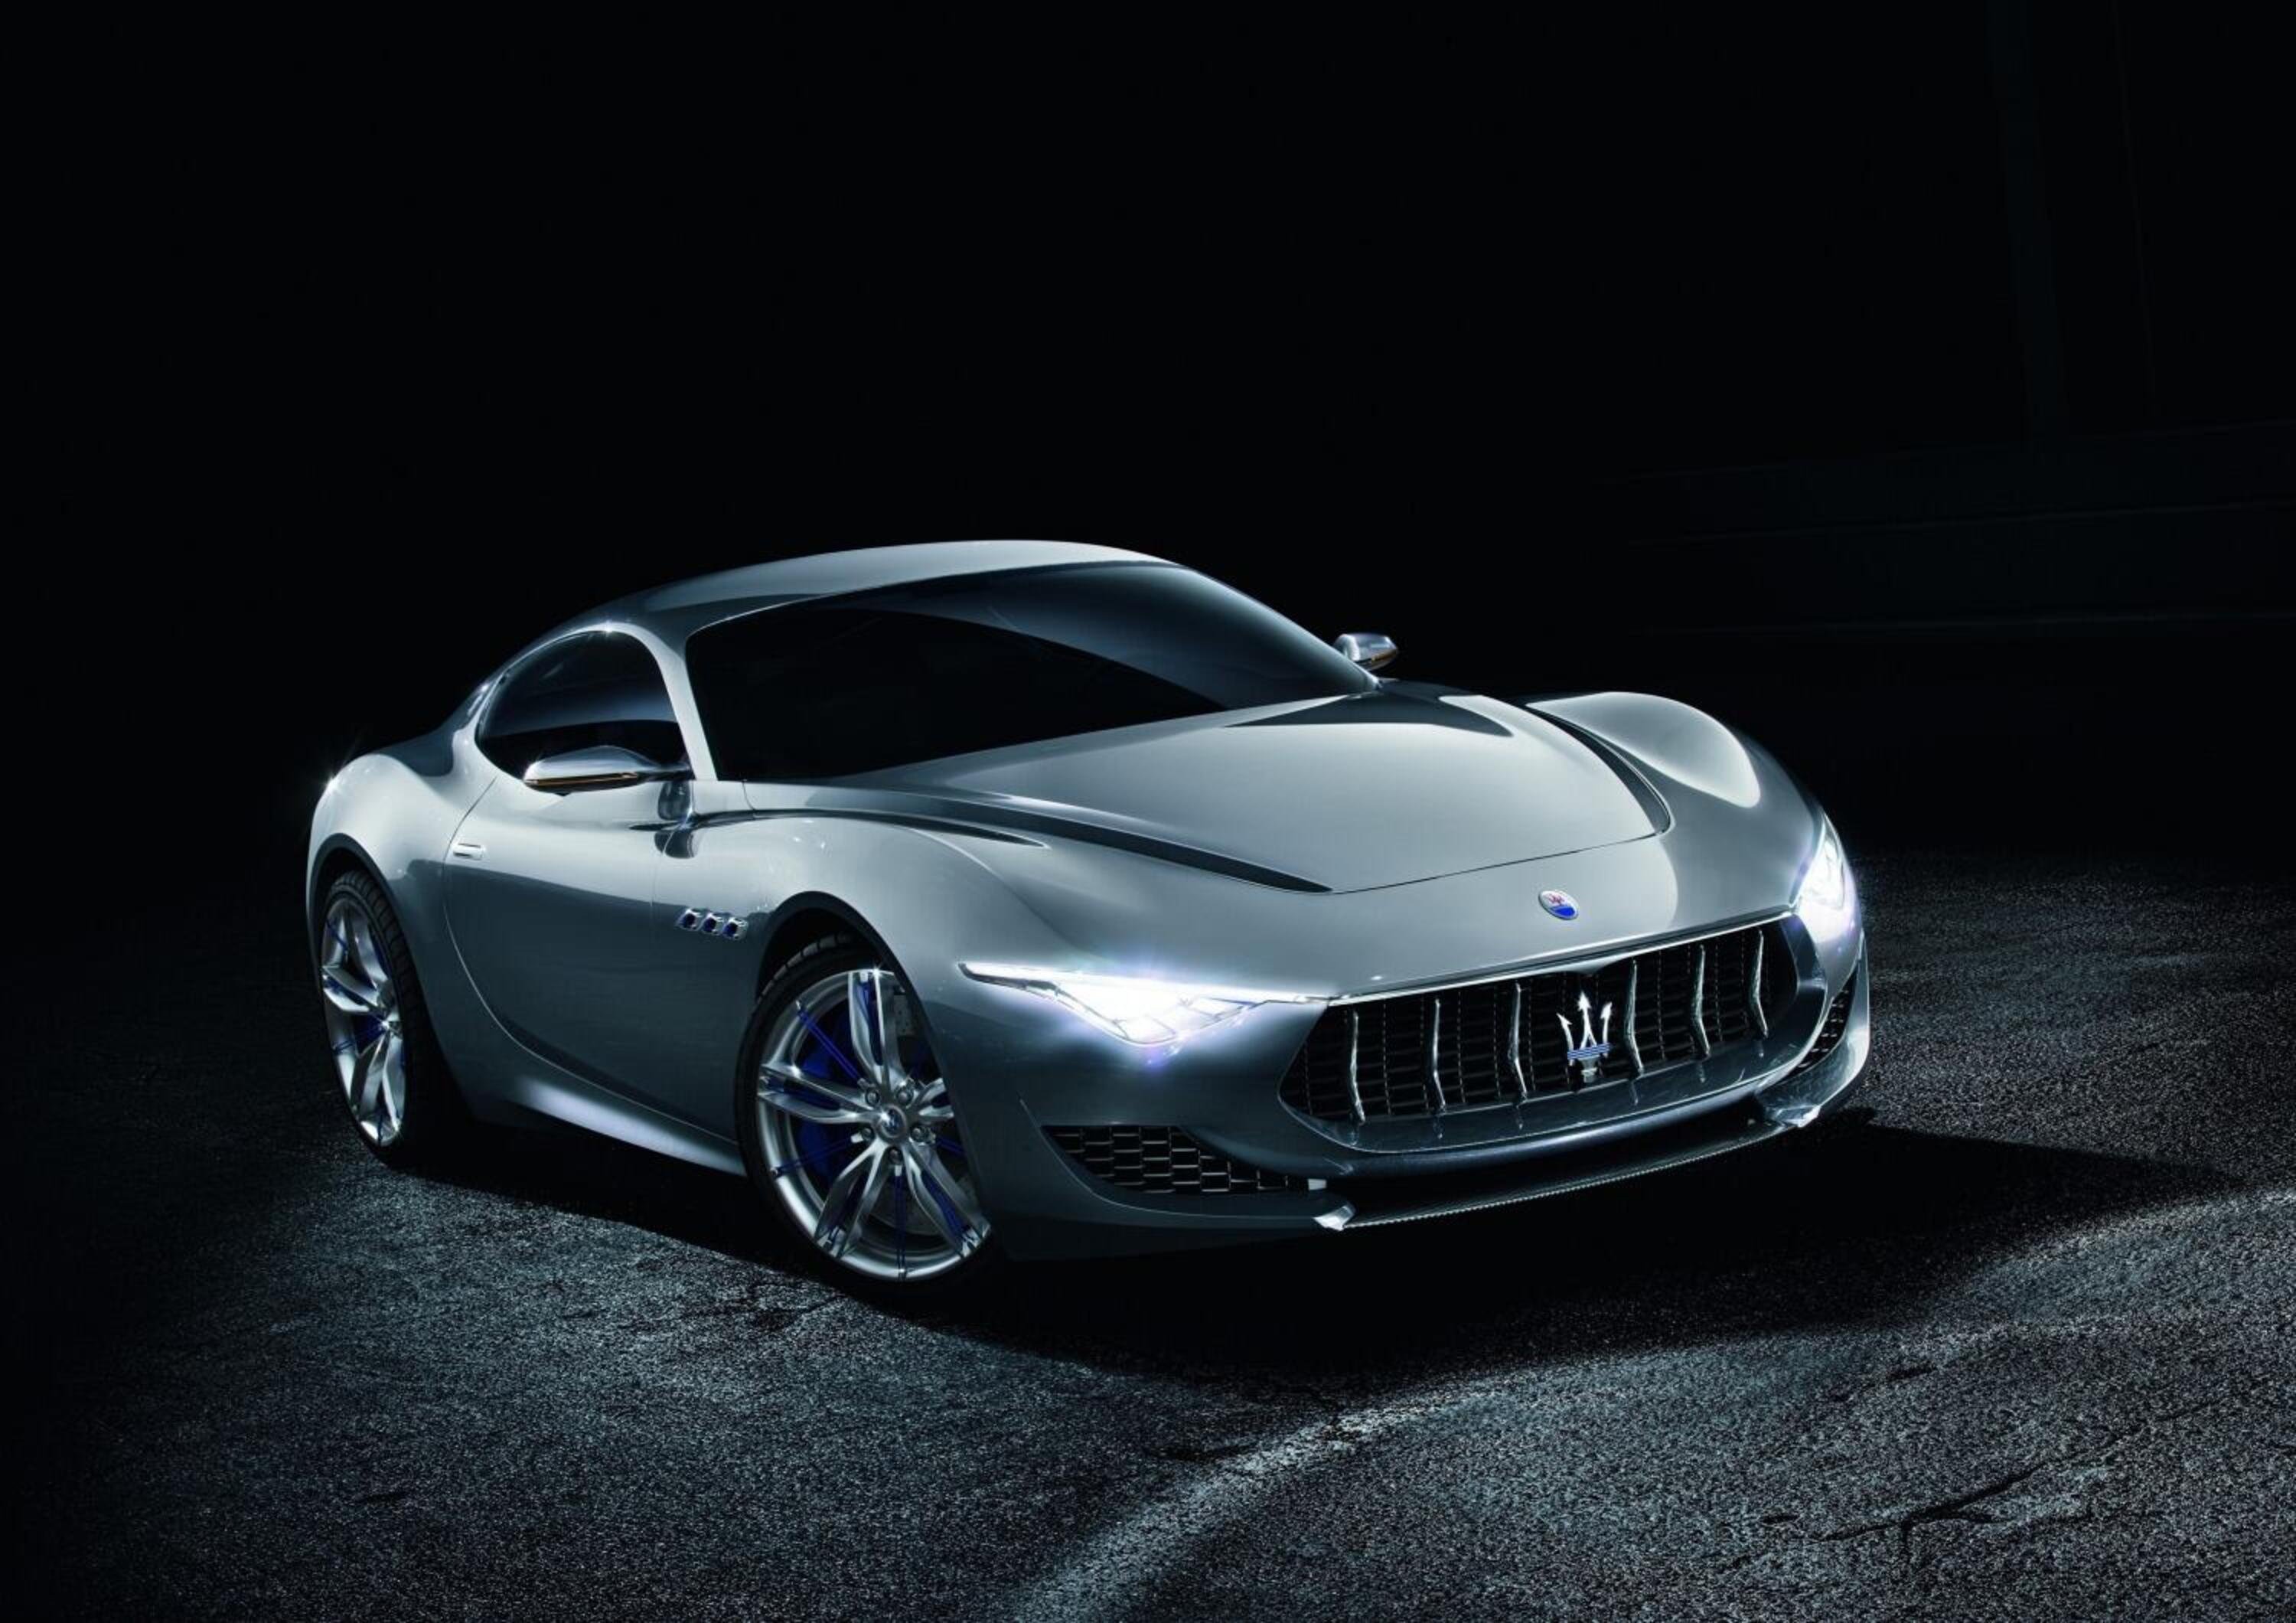 Estate 2020, Maserati scalda nuovi motori da record? Dall&rsquo;inedito piccolo Super4 ibrido al V8